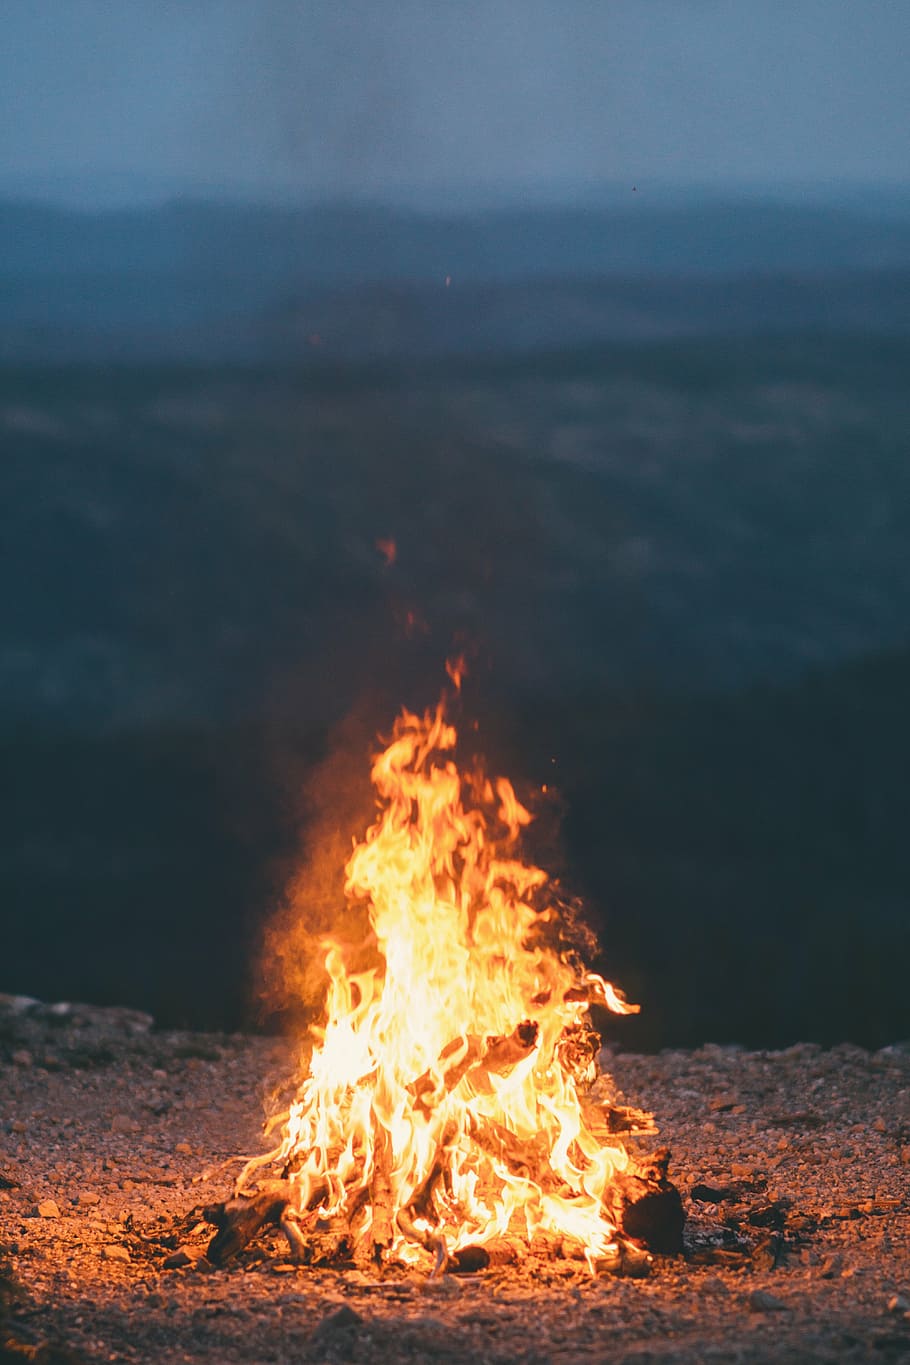 bond fire, firewoods, fire, daytime, flame, burn, bonfire, campfire, dark, night